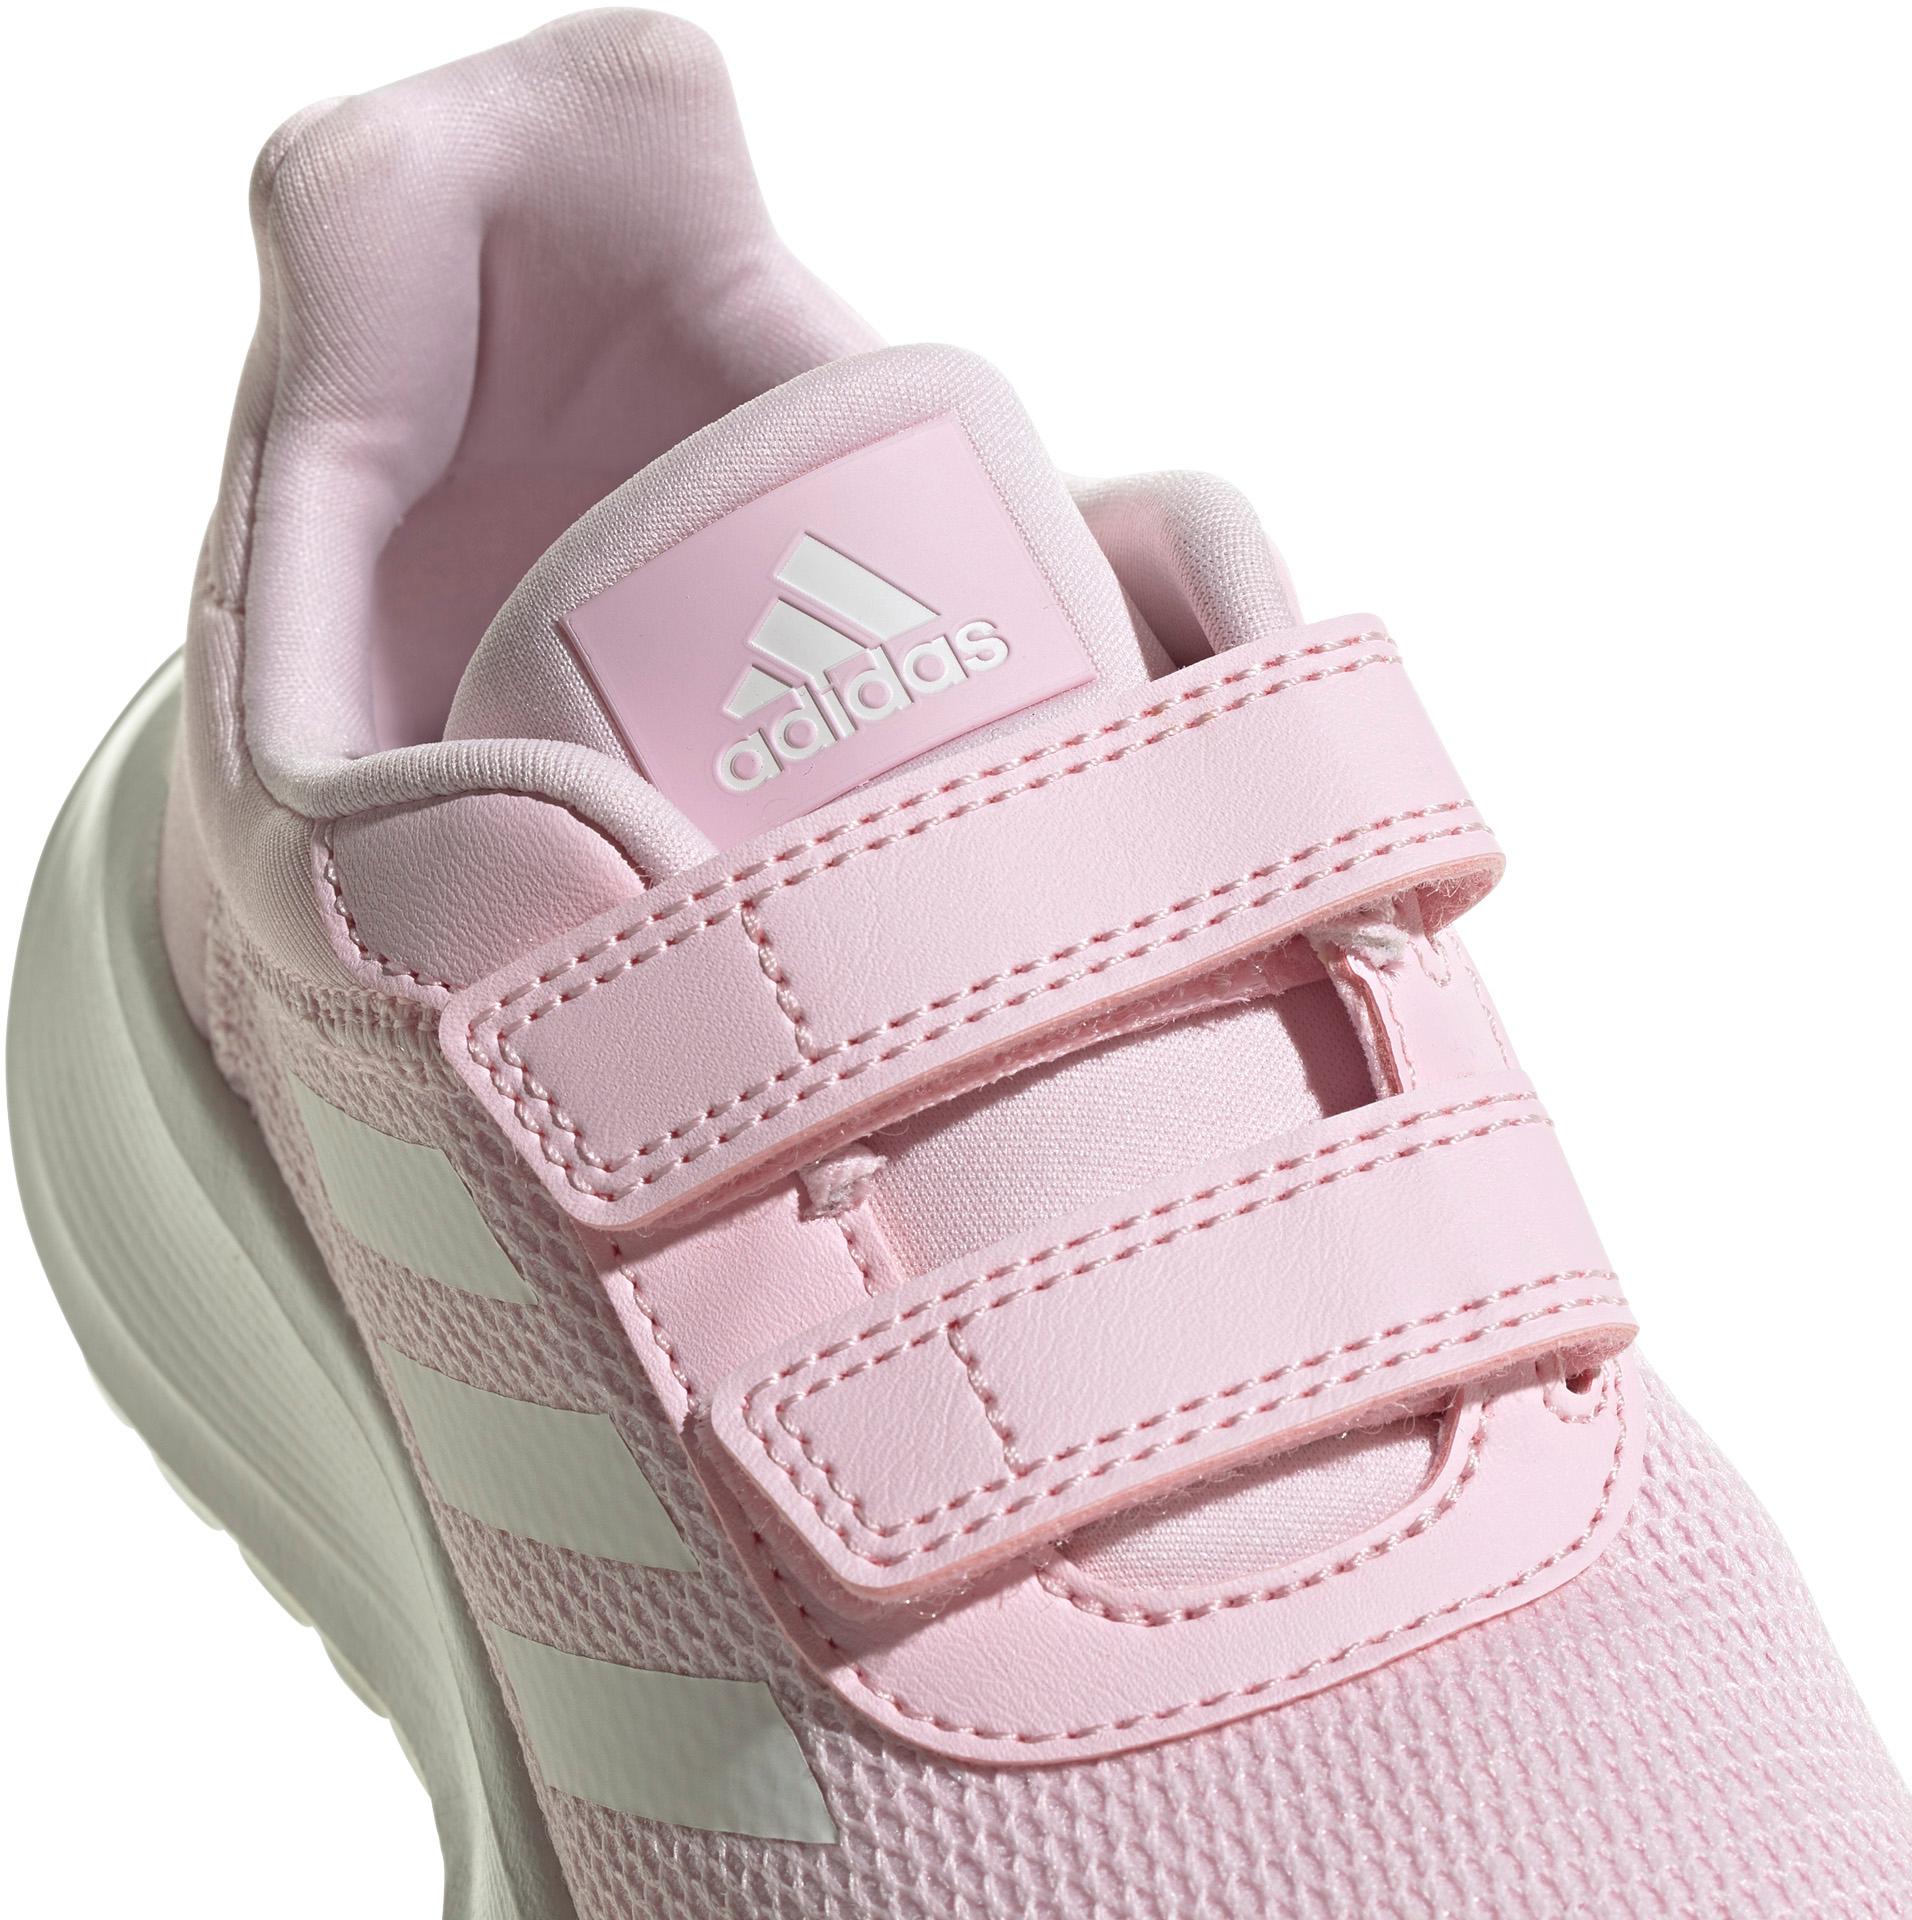 SportScheck 2.0 Shop Freizeitschuhe pink Kinder white-clear von kaufen im clear pink-core Online RUN TENSAUR Adidas